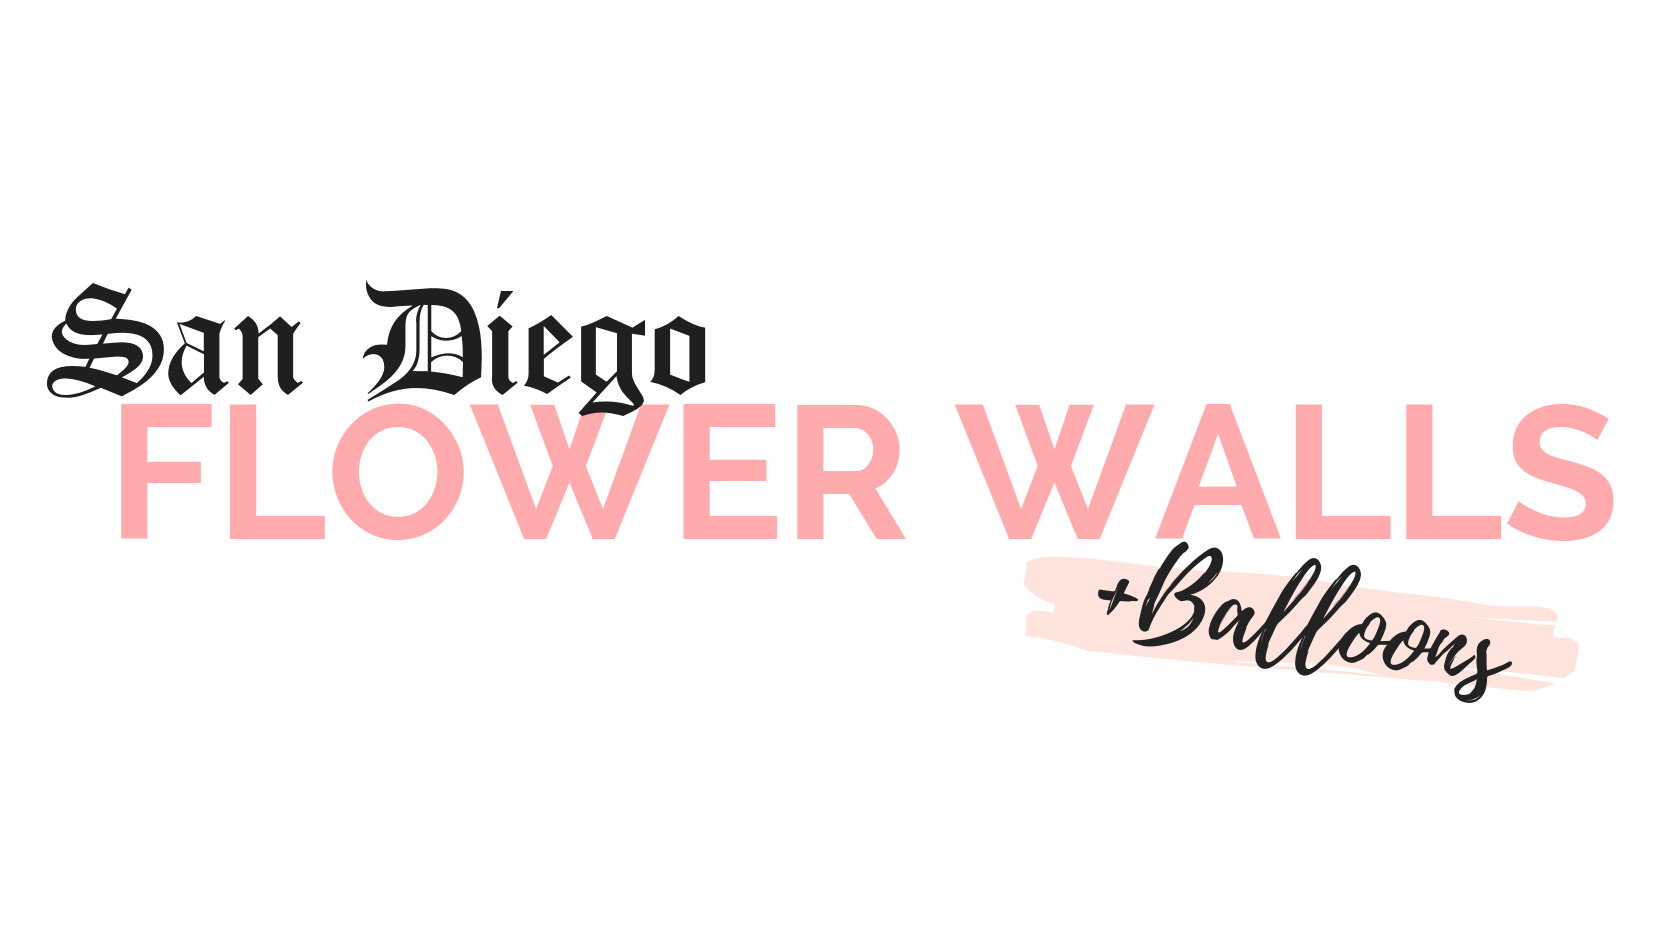 San Diego Flower Walls Logo